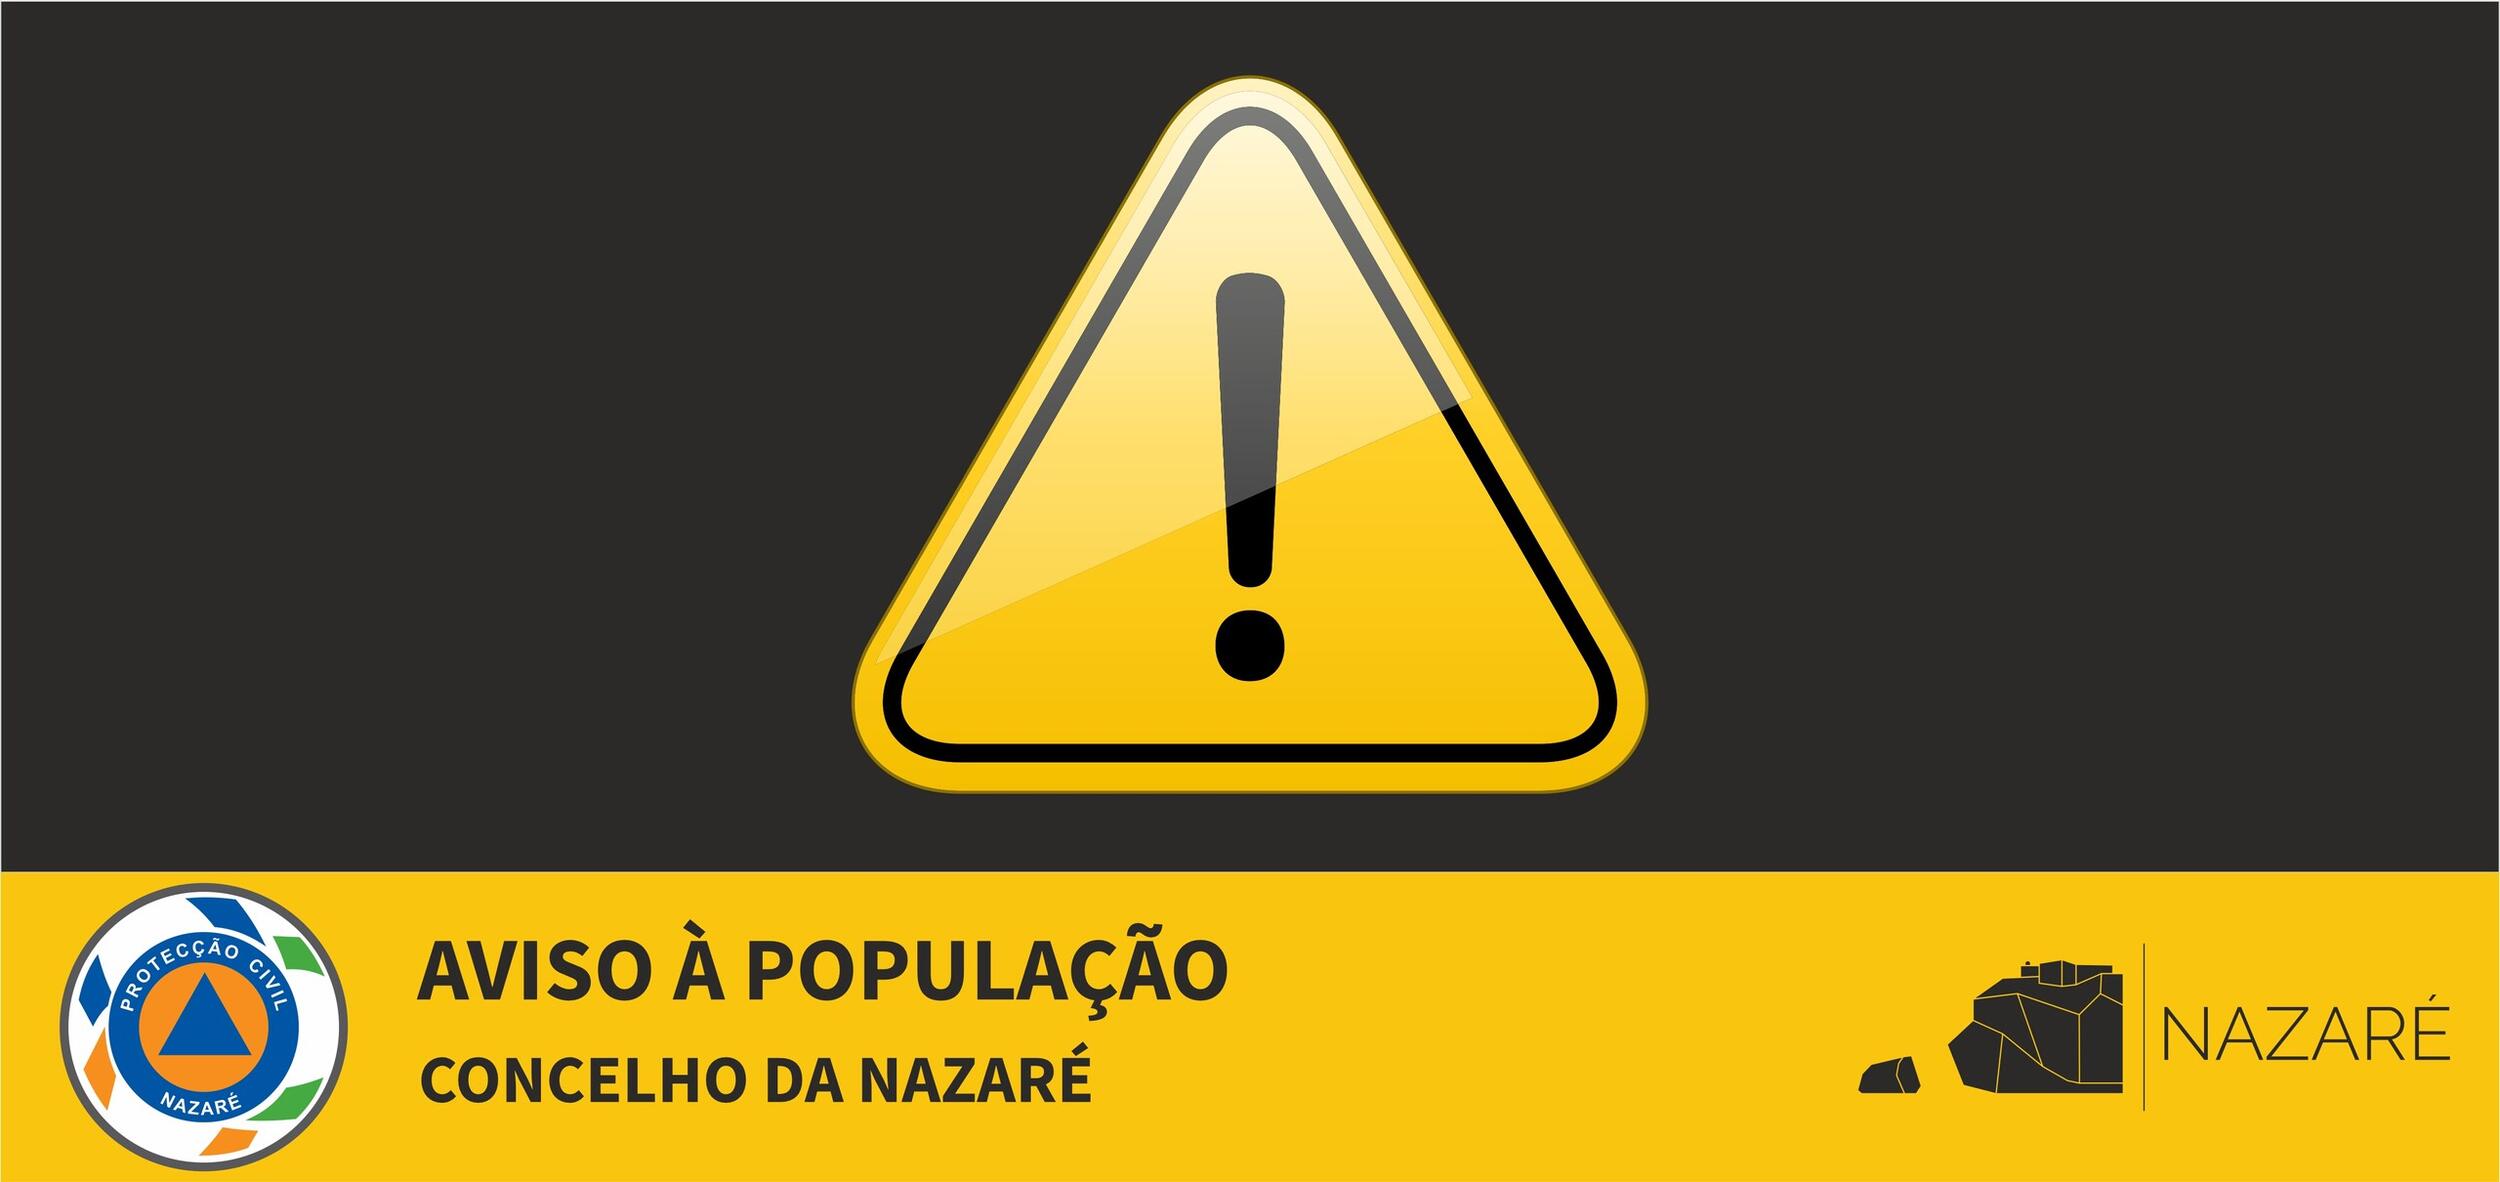 Portugal em situação de alerta para risco de incêndio 